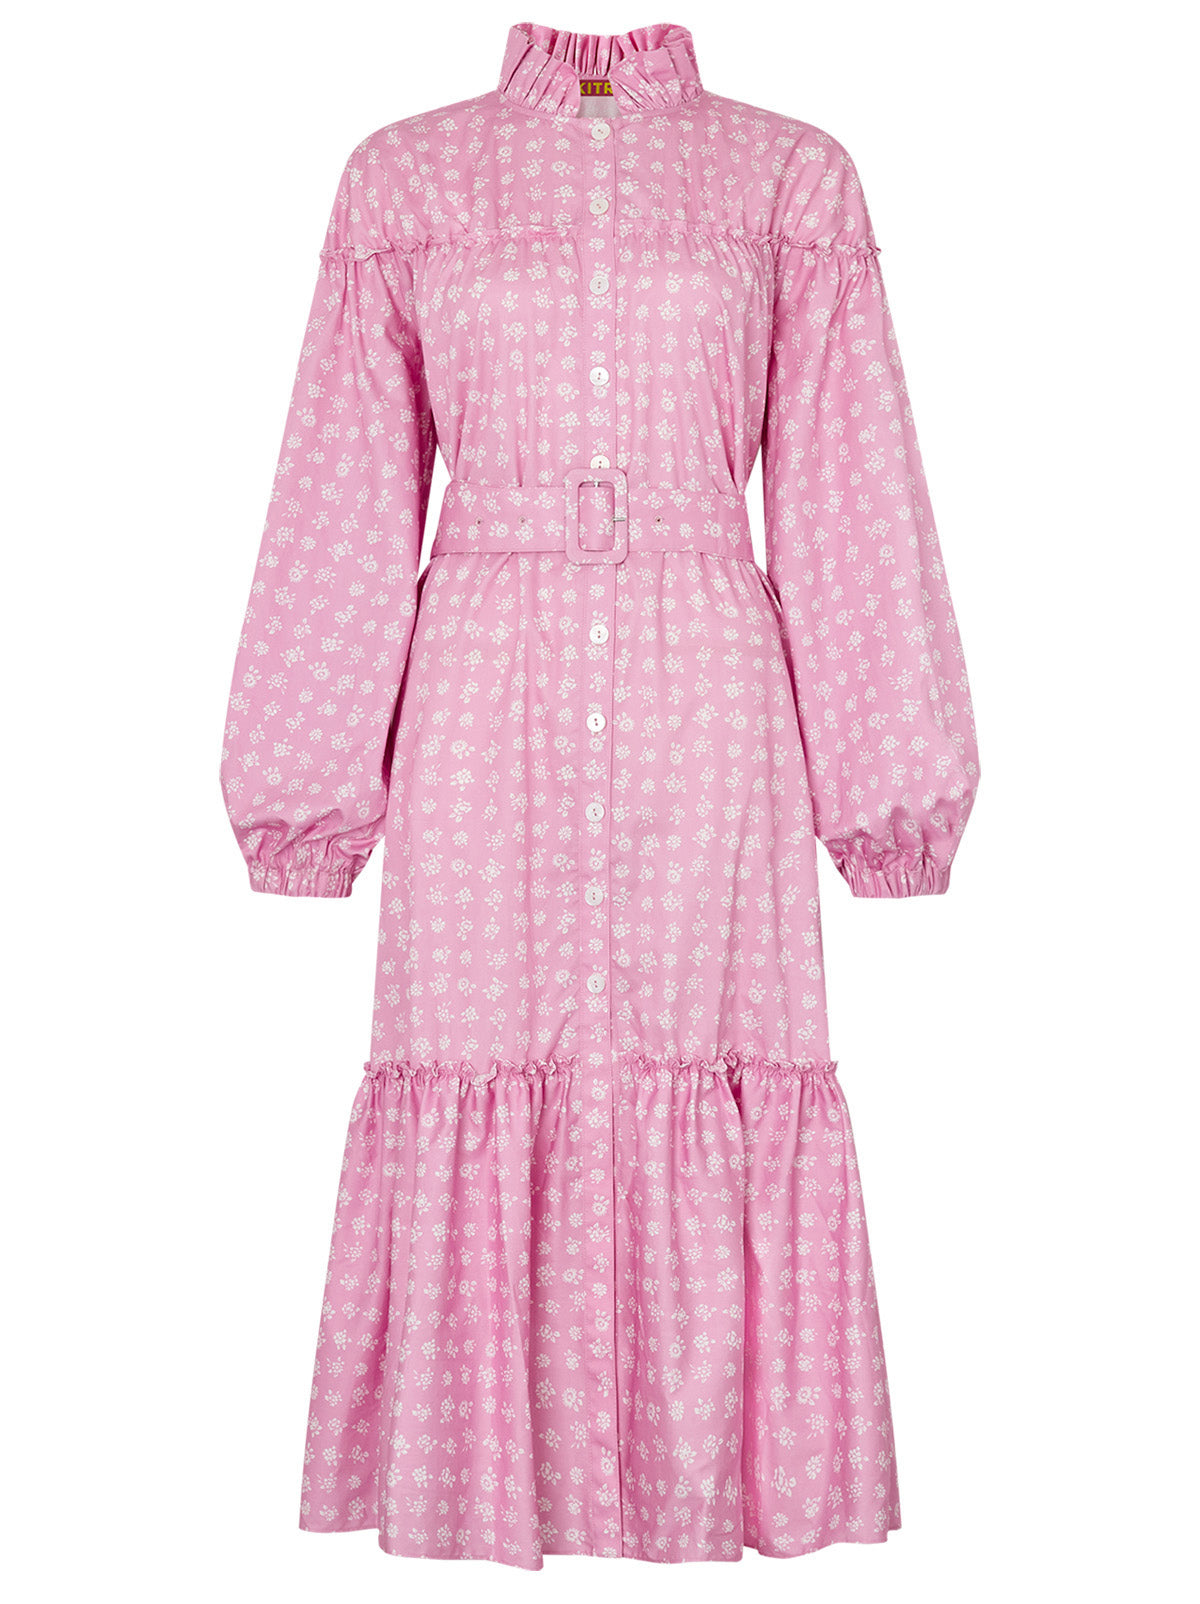 Joni Pink Floral Cotton Dress By KITRI Studio